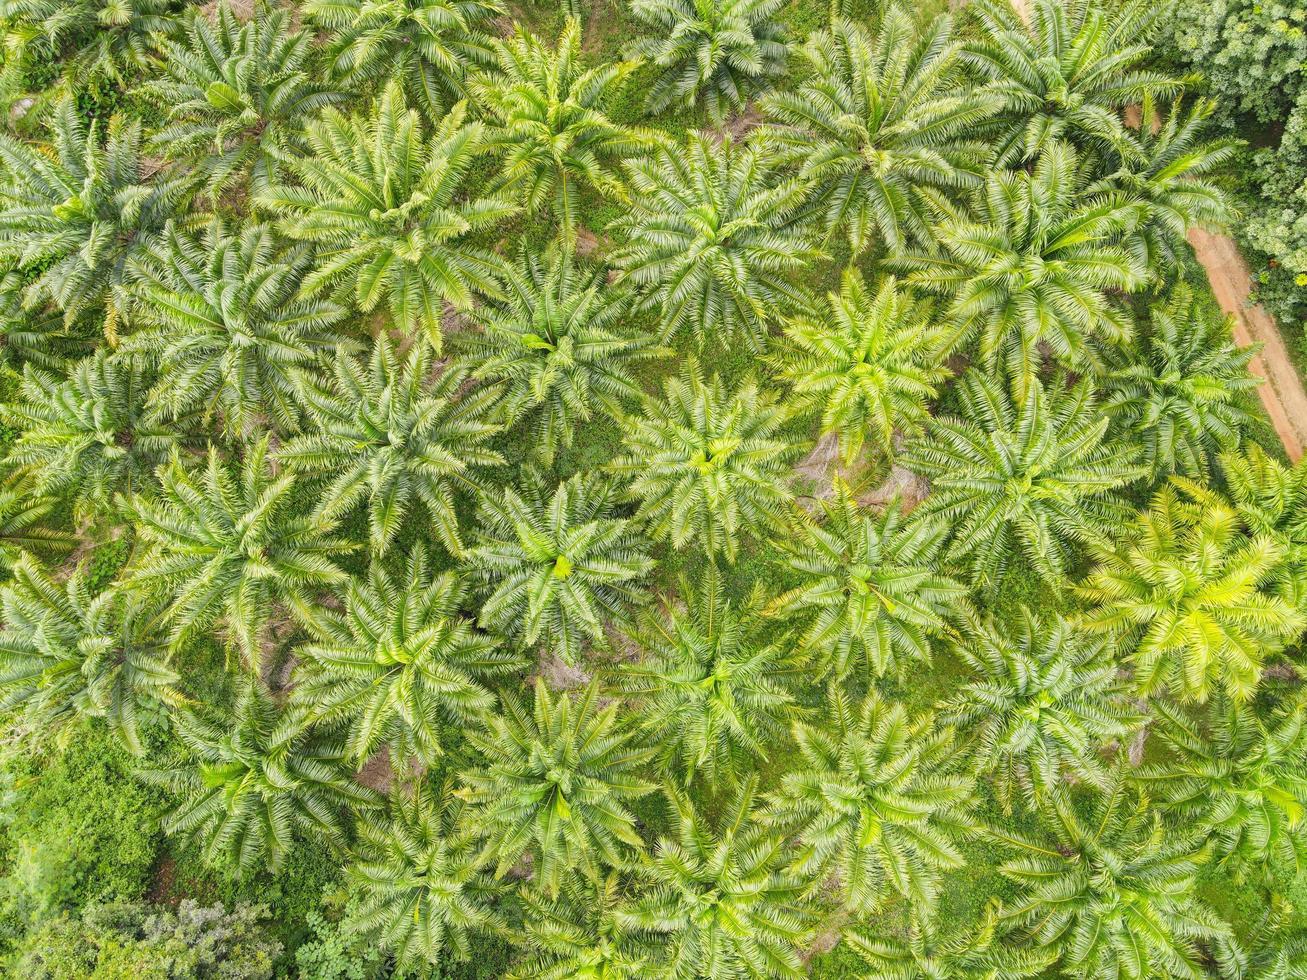 vista superior hojas de palma desde arriba de cultivos en verde, vista de pájaro planta de árbol tropical, vista aérea de la palmera campos verdes naturaleza granja agrícola fondo foto